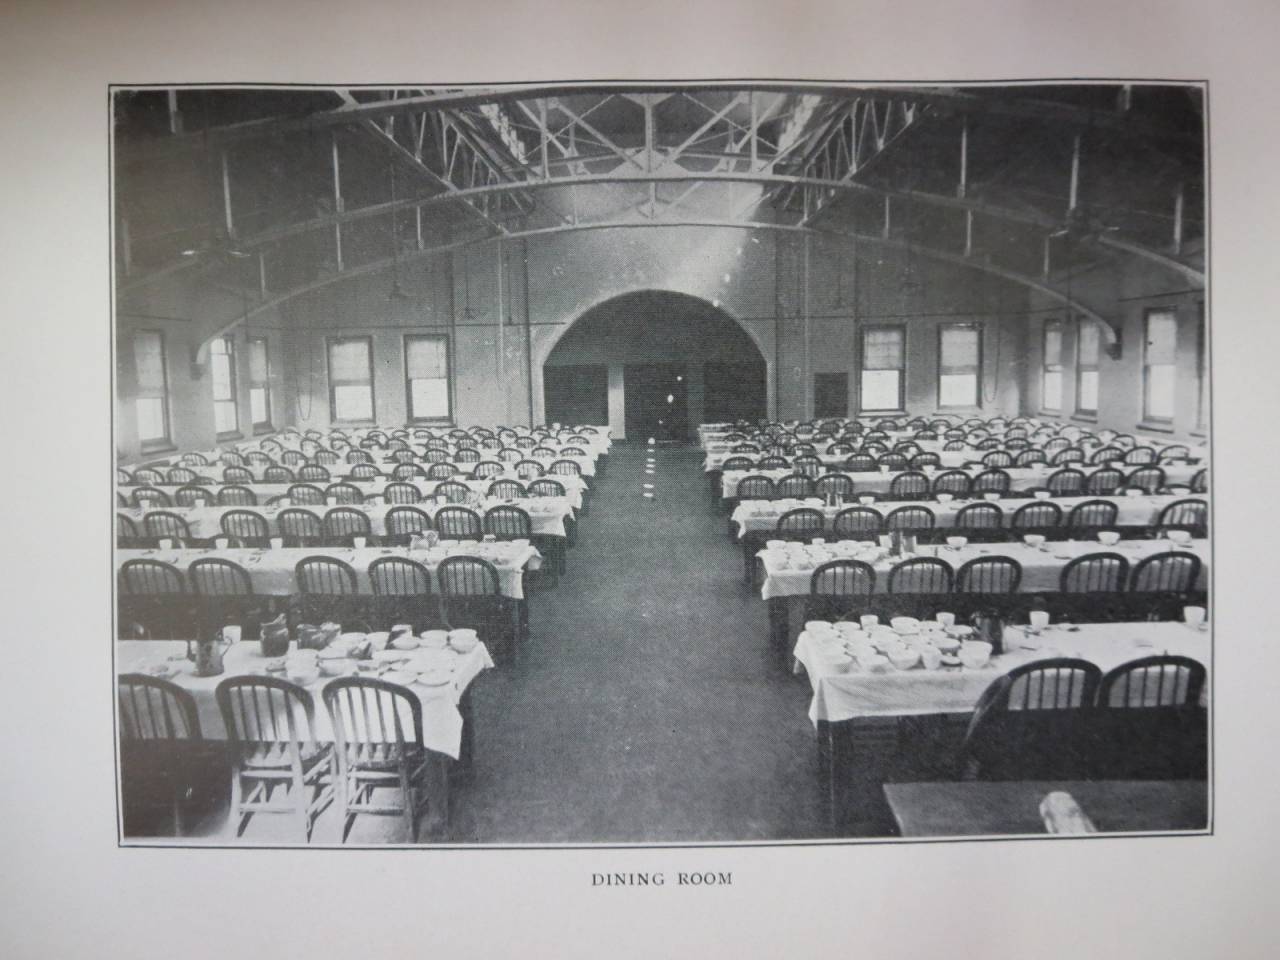 Dining Room 1917, Overbrook Asylum